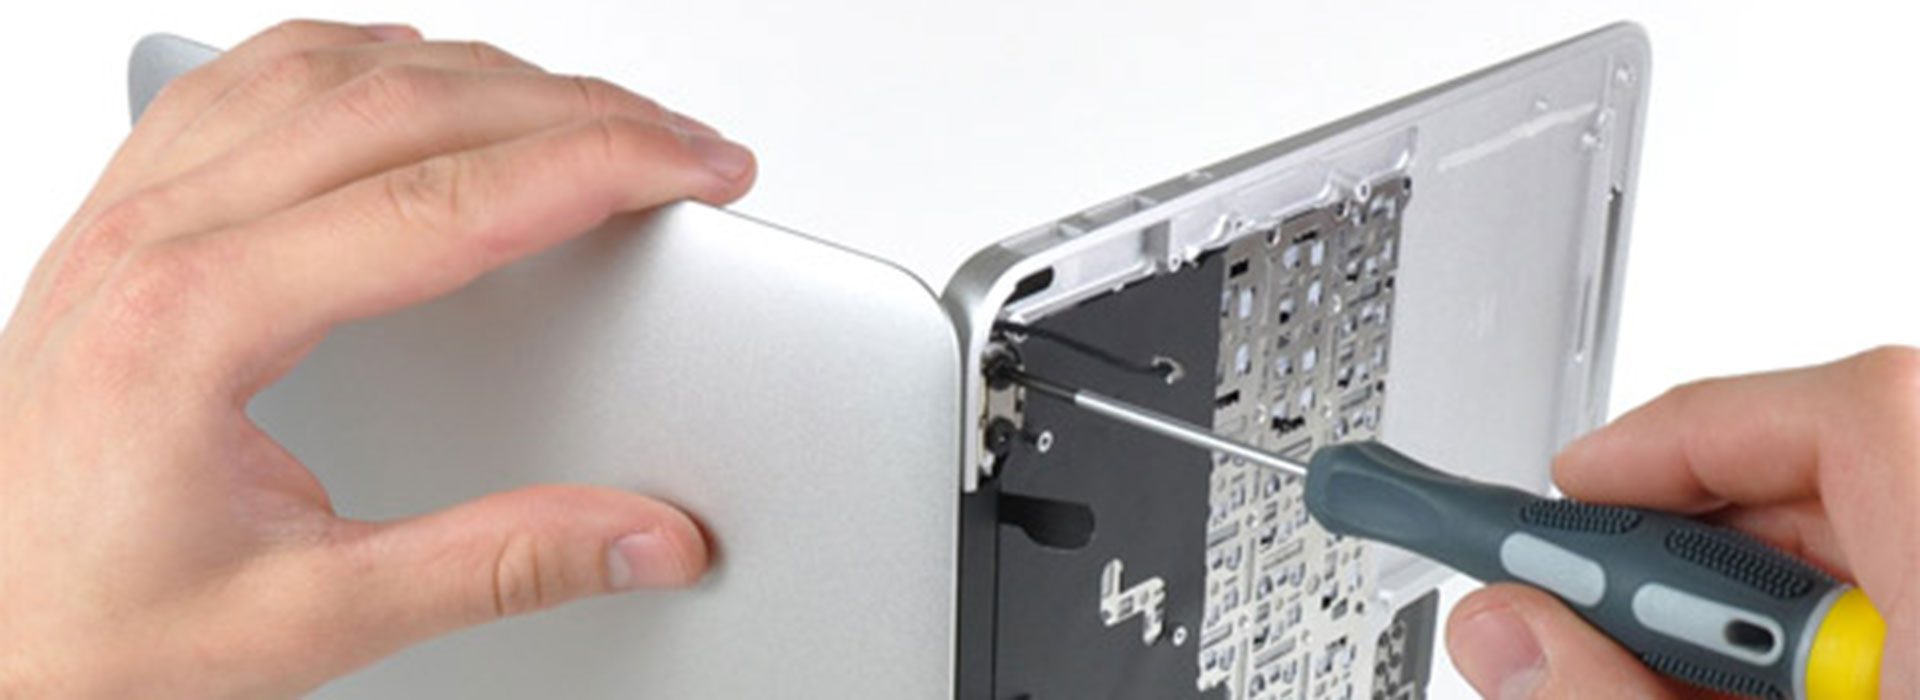 Computer Repair Systems – Tampa Bay Apple Repairs